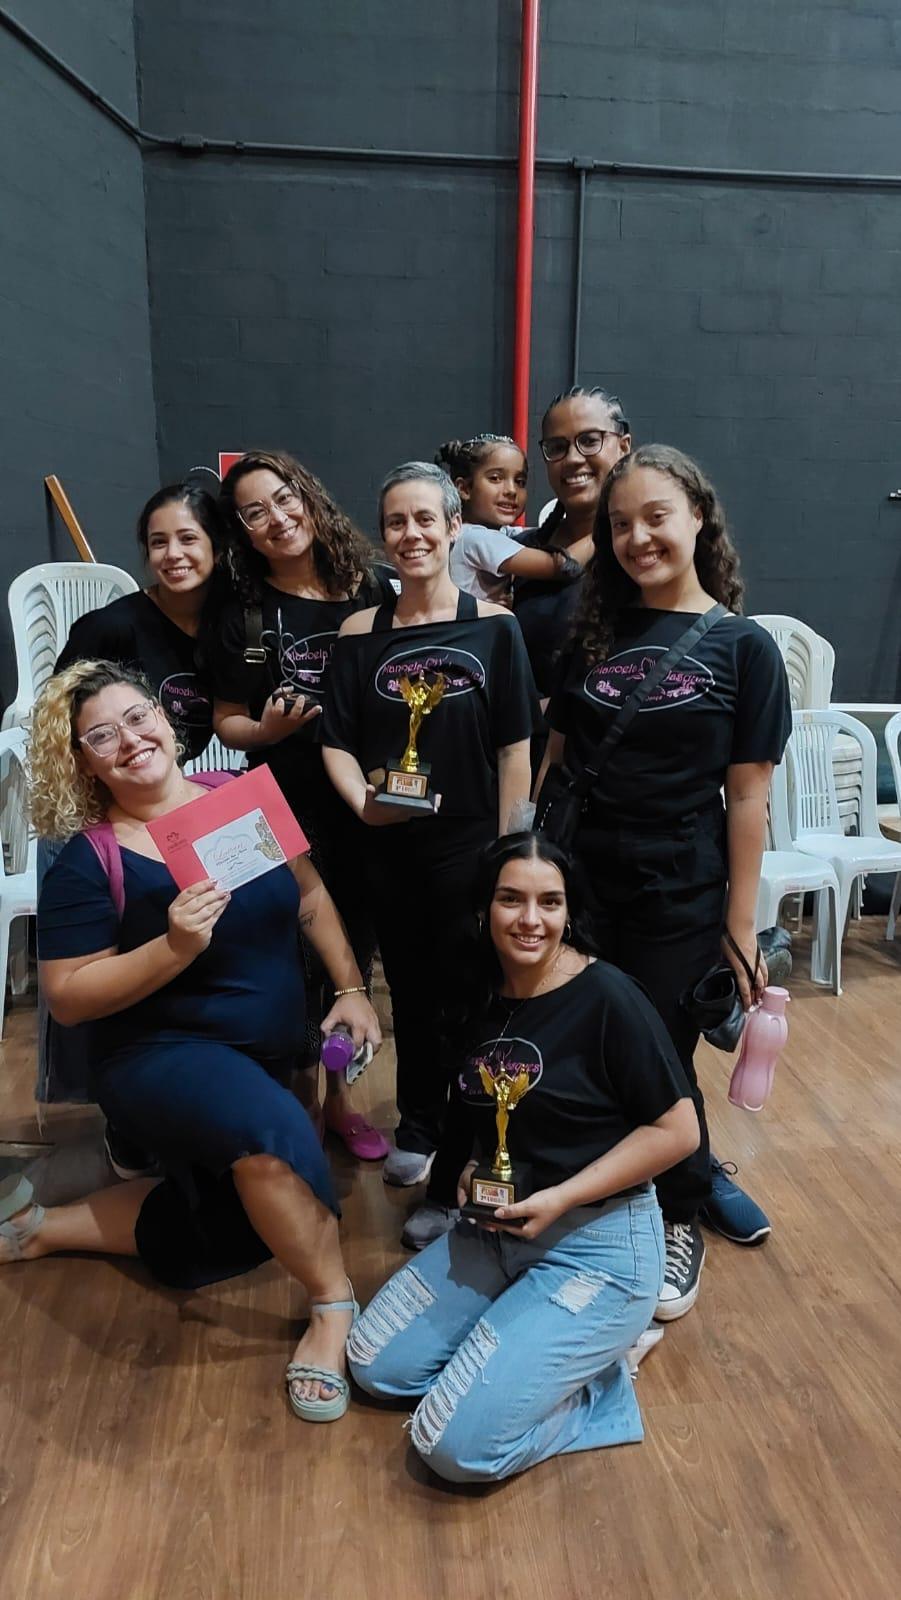 Escola de Dança Estúdio de Artes Manoela Jasques é premiada durante festival em Ilha Solteira